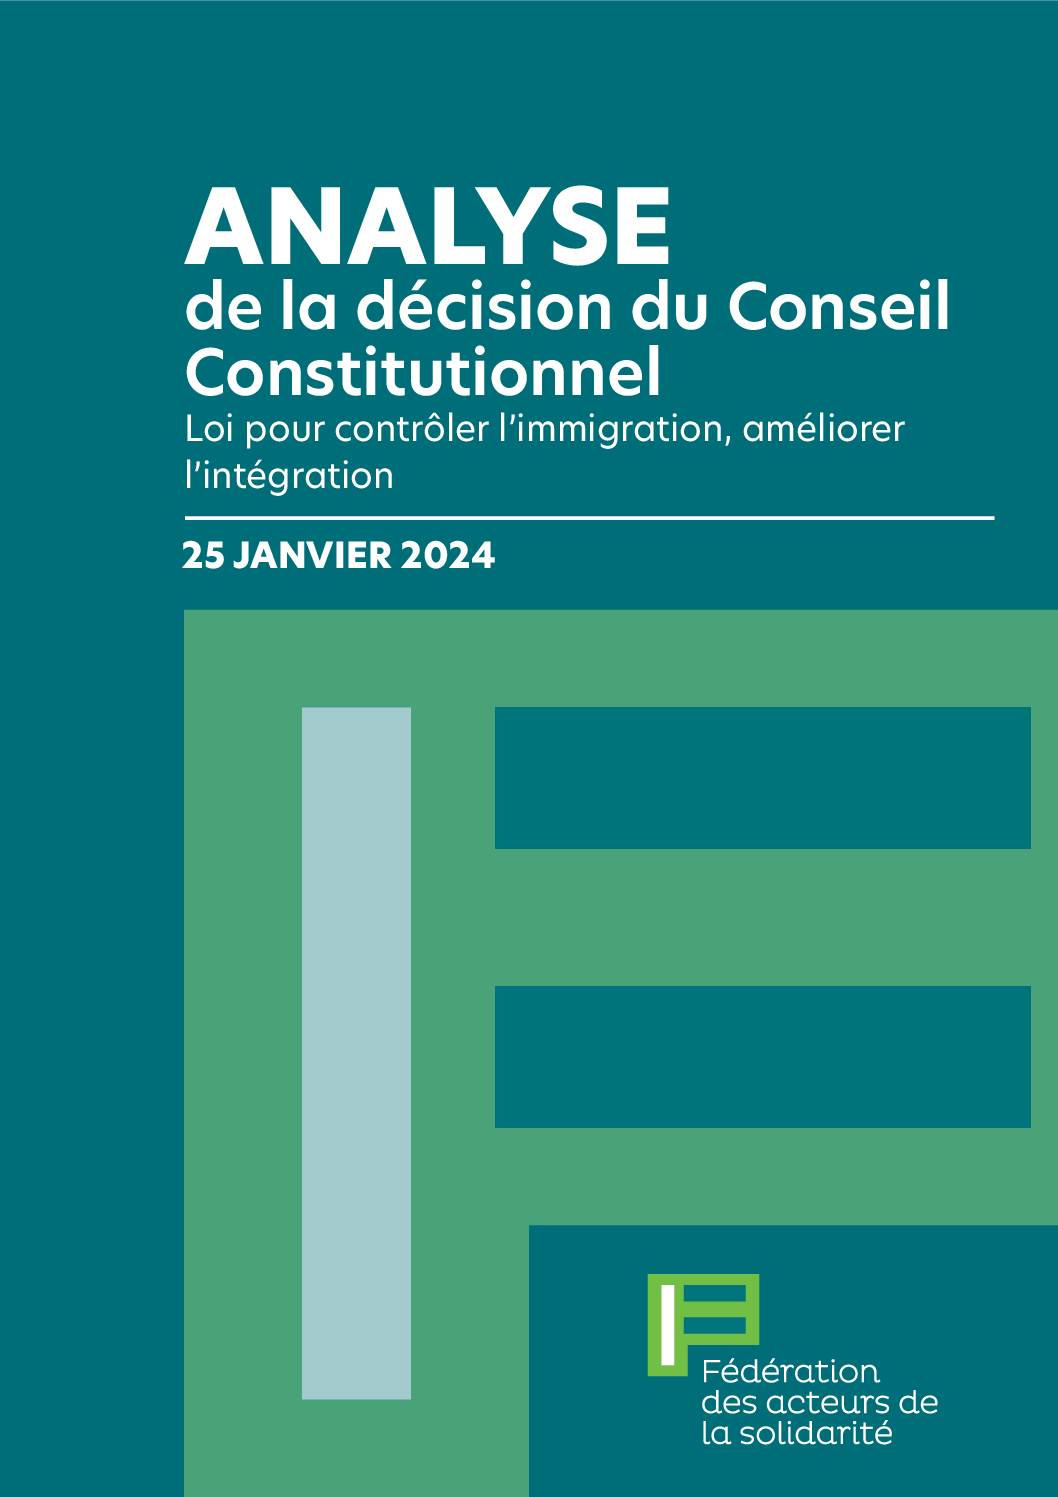 [Loi immigration] Analyse de la décision du Conseil constitutionnel